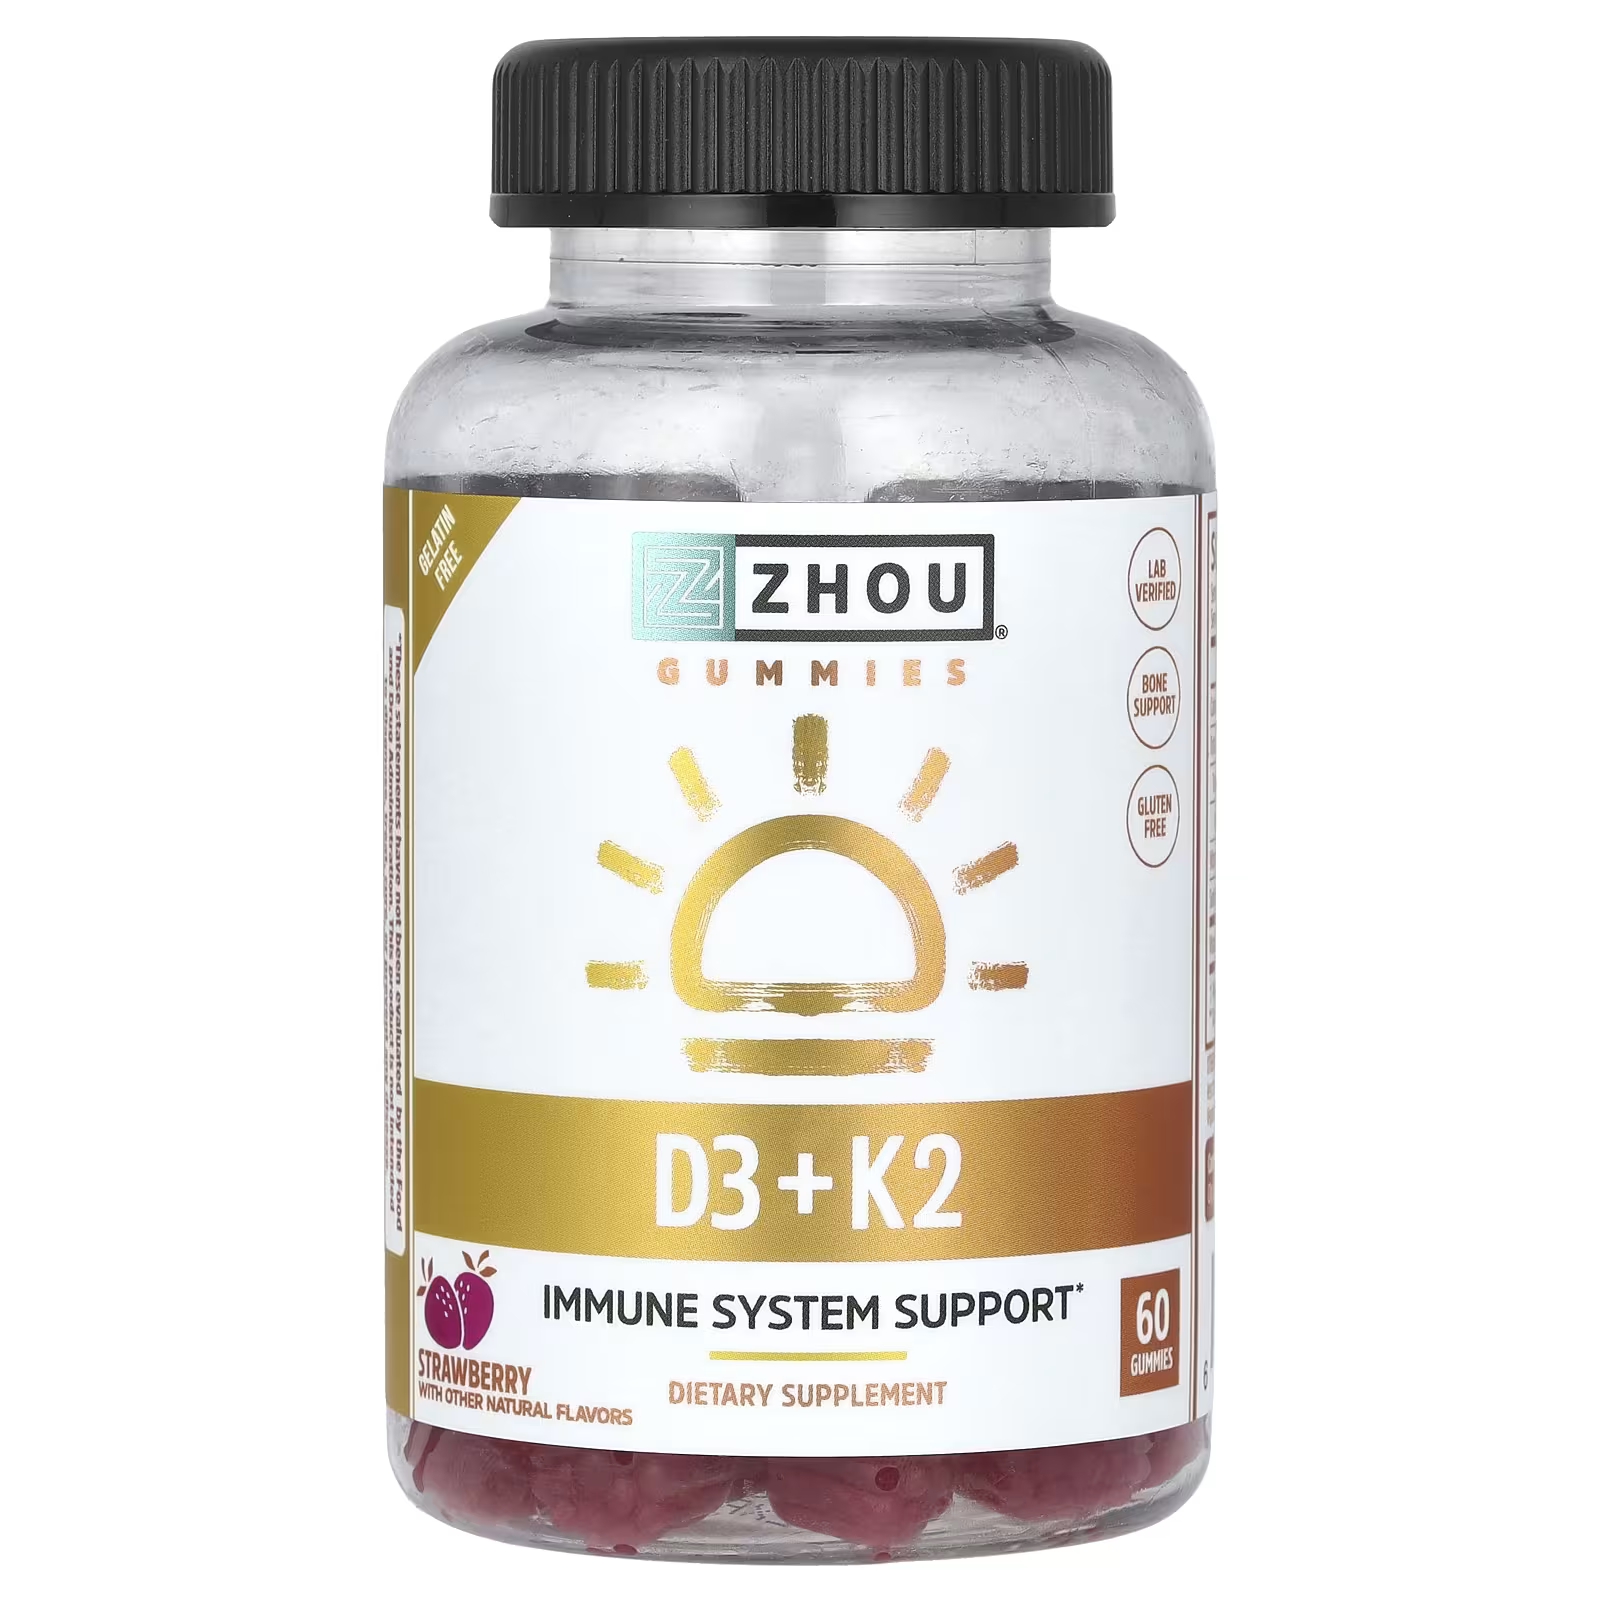 Пищевая добавка Zhou Nutrition D3 + K2 с клубникой, 60 жевательных конфет пищевая добавка zhou nutrition iron beard 60 капсул